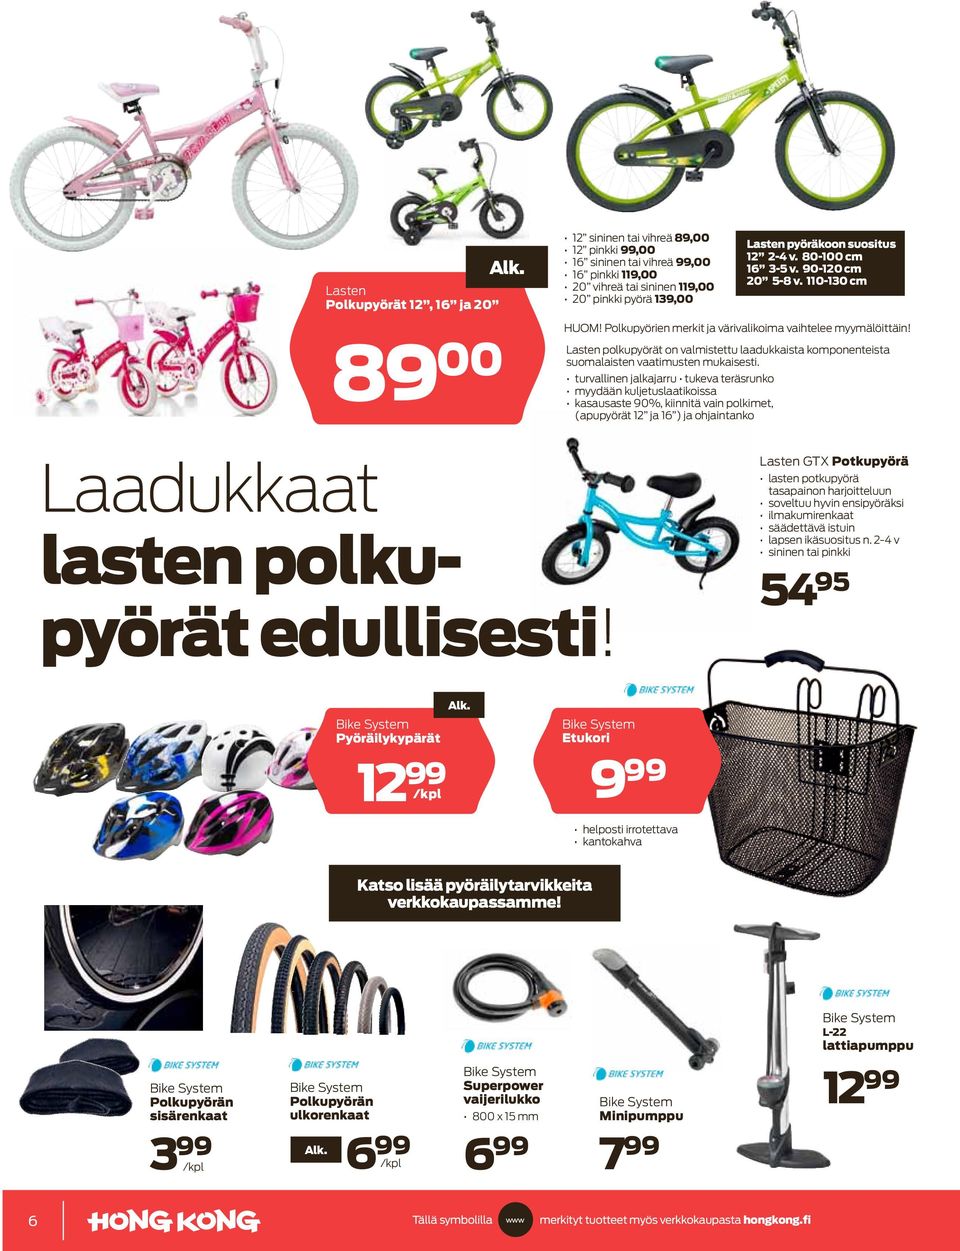 89 00 Lasten polkupyörät on valmistettu laadukkaista komponenteista suomalaisten vaatimusten mukaisesti.